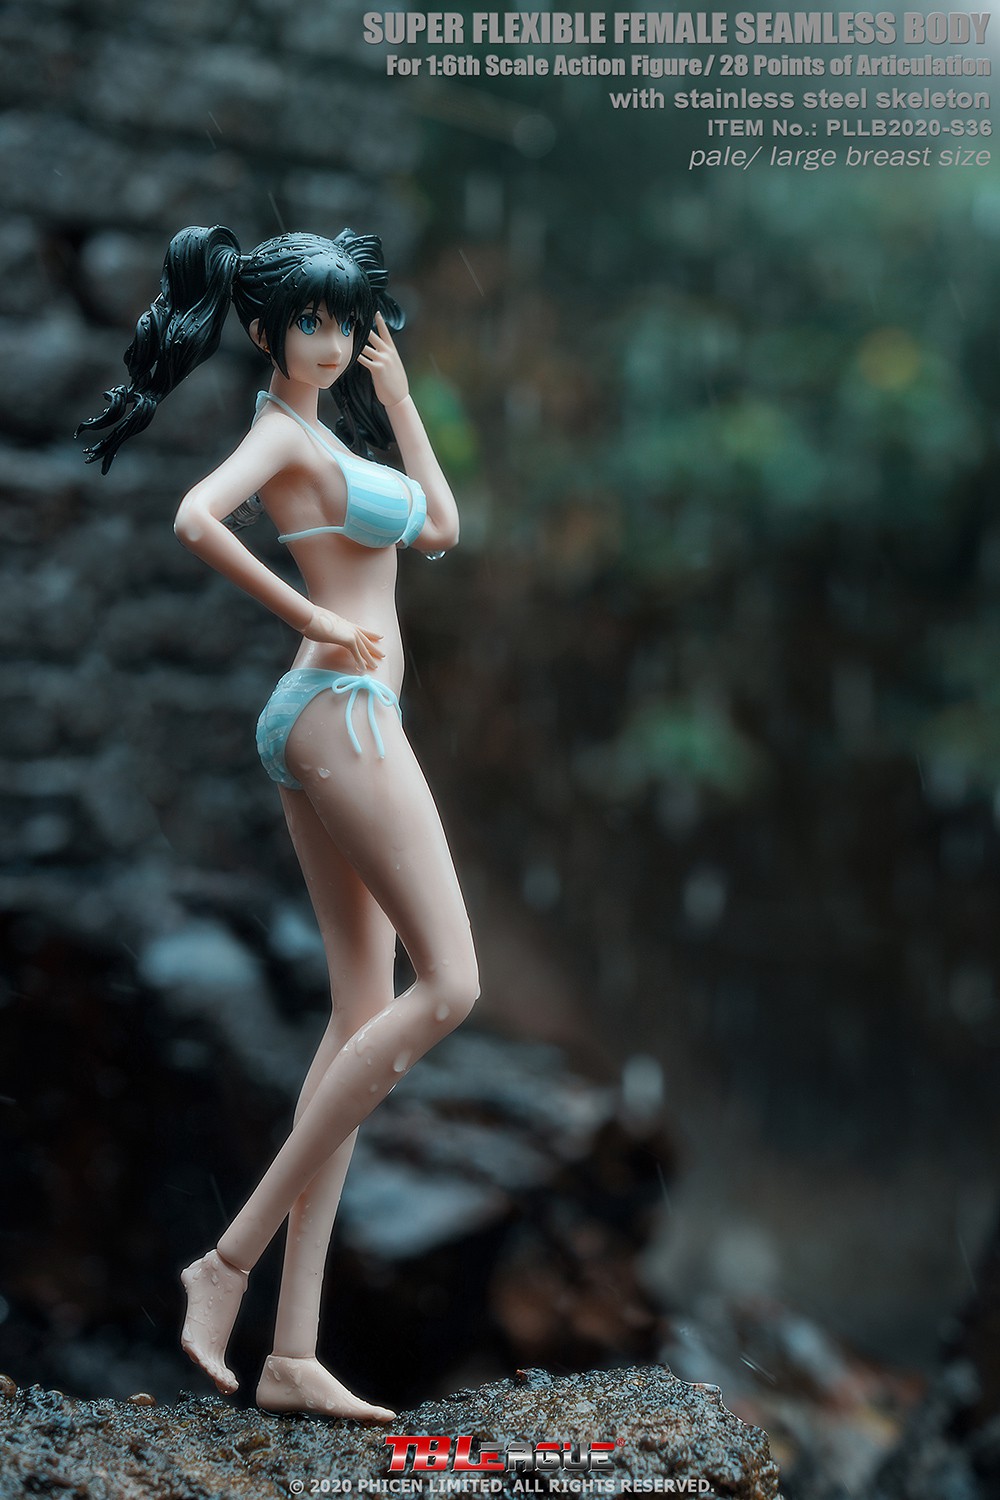 NEW PRODUCT: TBLeague: 1/6 girl anime S36 / S37 "small waist fine" body 17191810